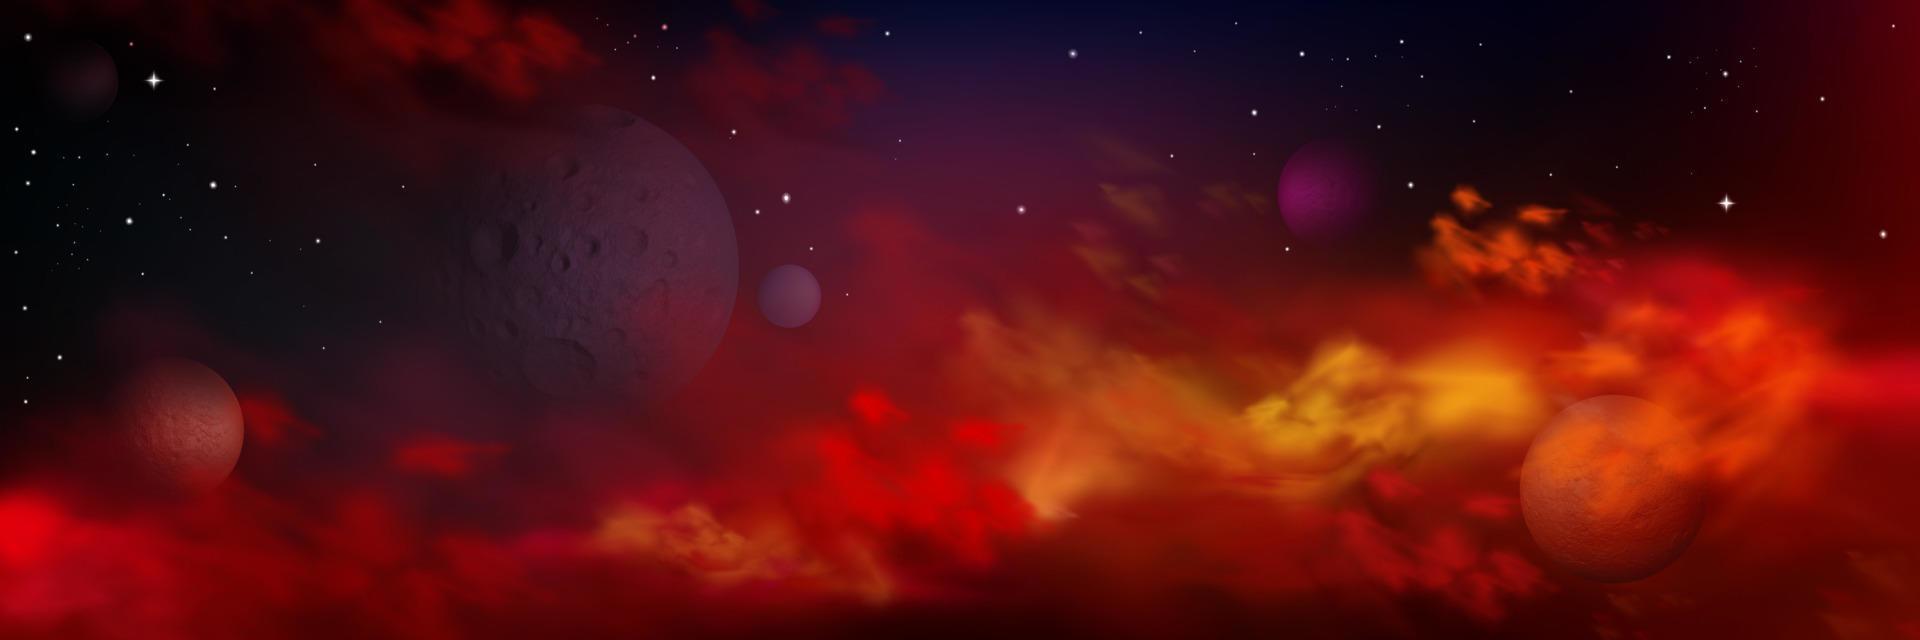 realistisk Plats med planeter, stjärnor och röd moln vektor